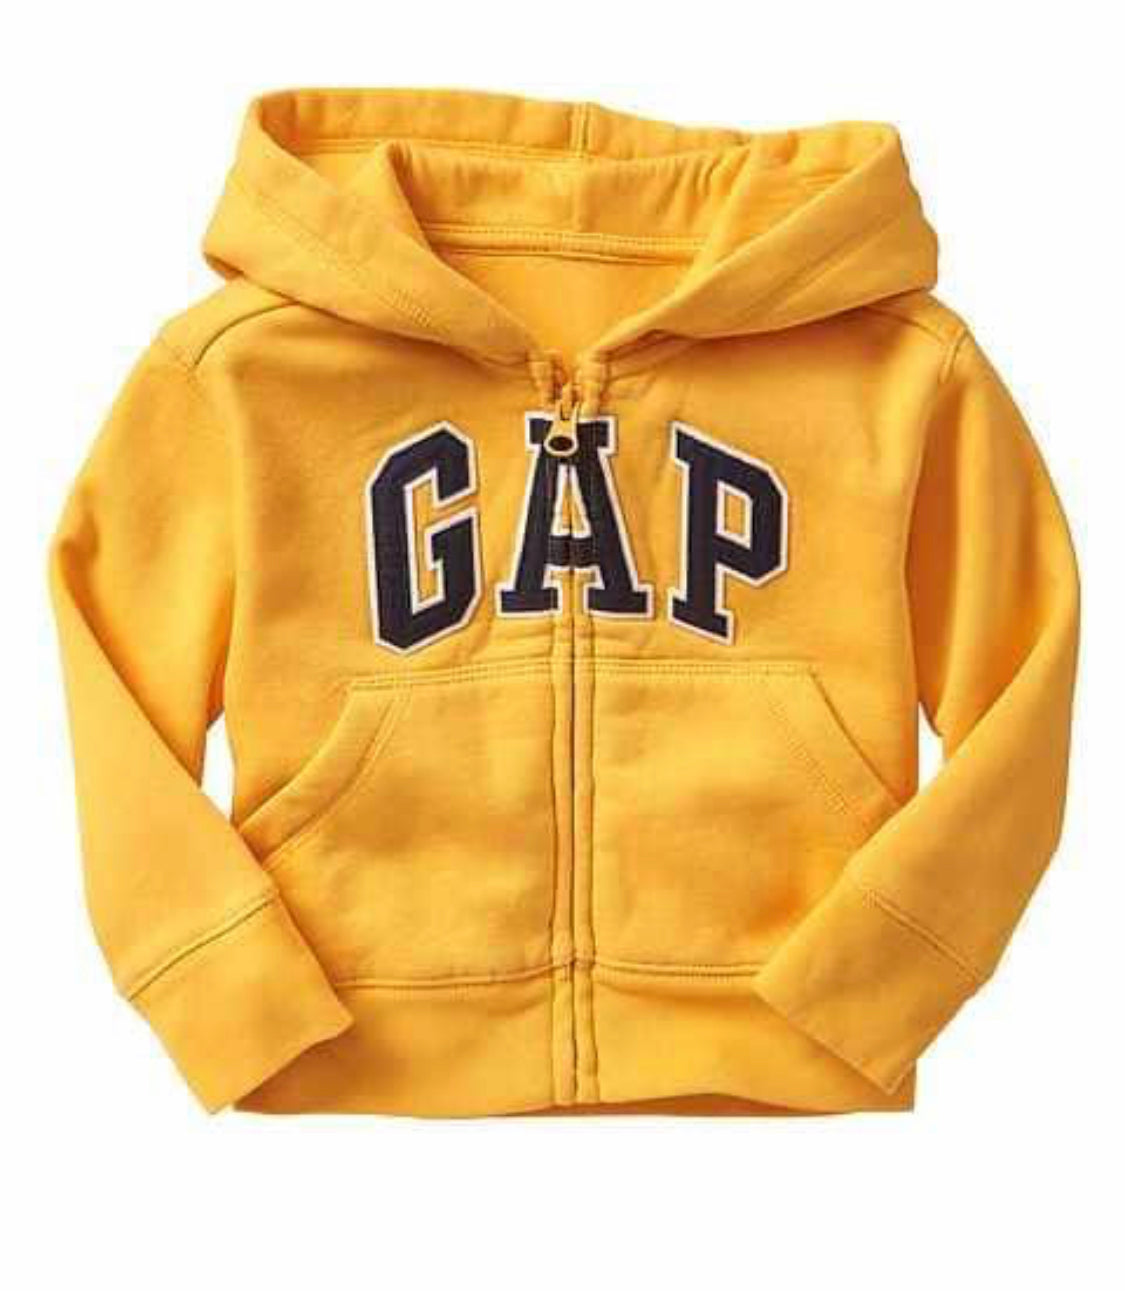 gap hoodie baby girl